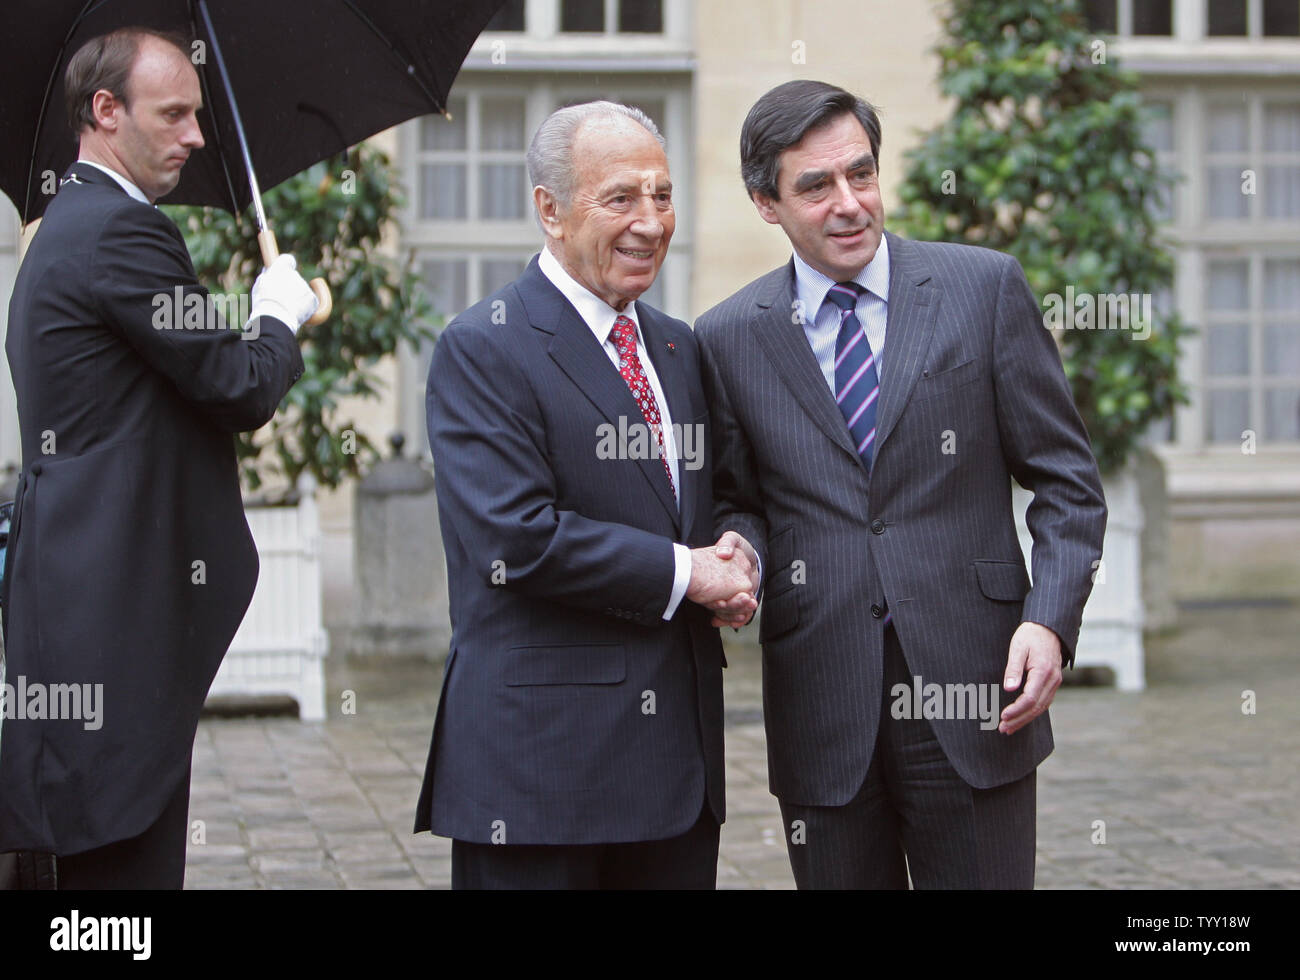 Le président israélien Shimon Peres (L) est accueilli par le Premier ministre français François Fillon à son arrivée au bureau du premier ministre à Paris, le 11 mars 2008. Peres, qui est en France pour une durée de cinq jours est le premier chef de l'Etat à effectuer une visite d'état depuis la France. (Photo d'UPI/Eco Clement) Banque D'Images